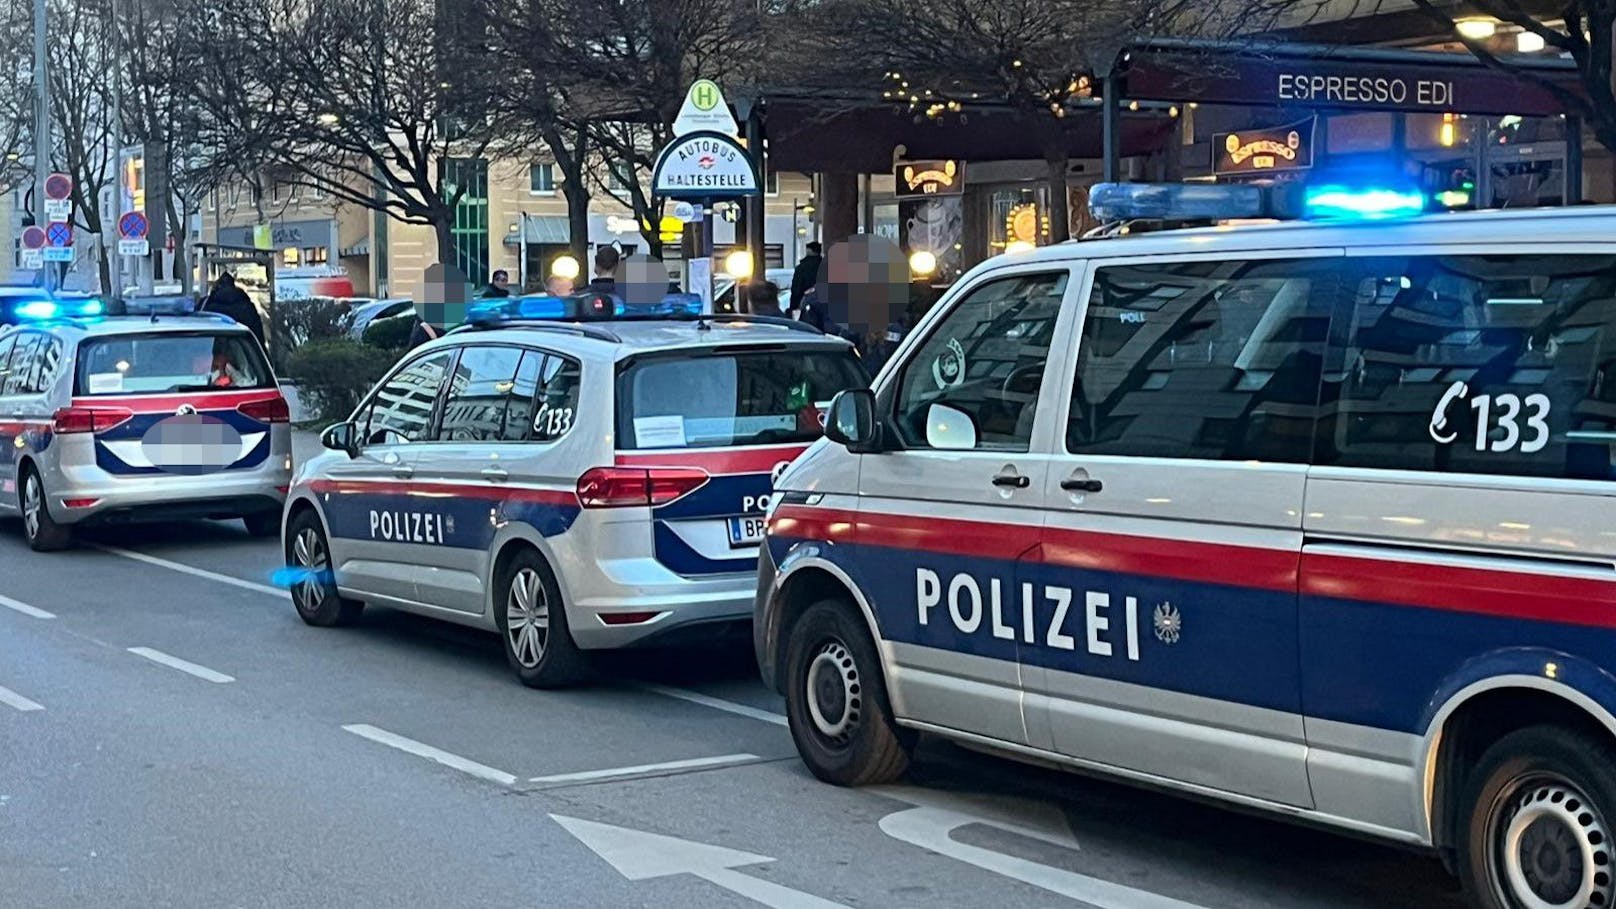 Polizei-Einsatz am Mittwochnachmittag in Wien-Favoriten!